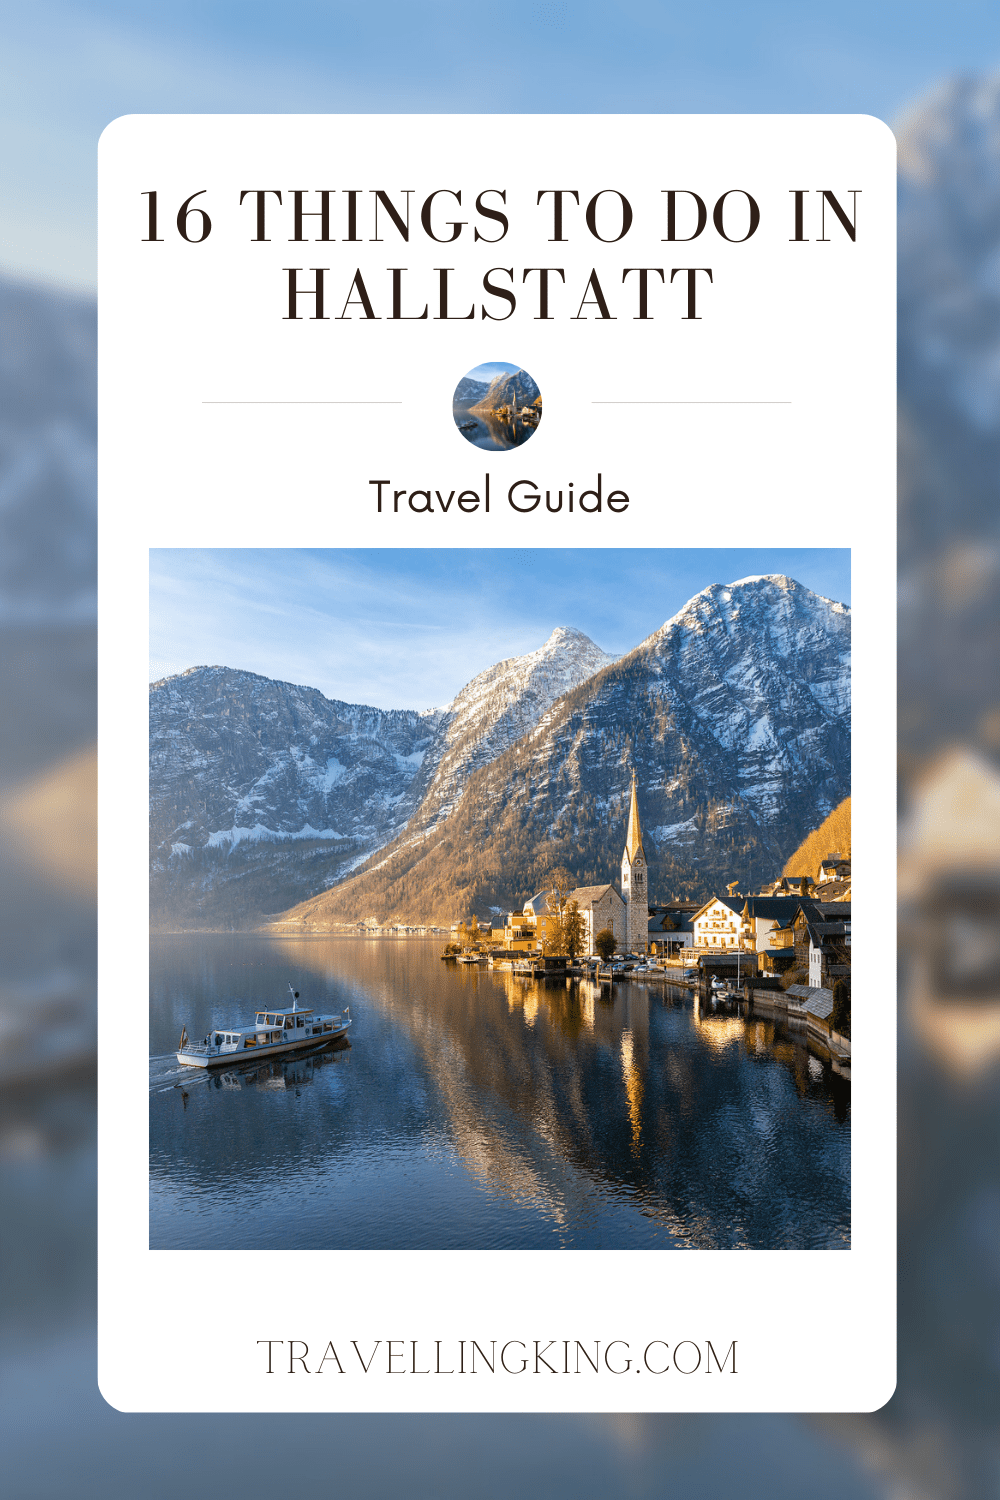 16 Things to do in Hallstatt